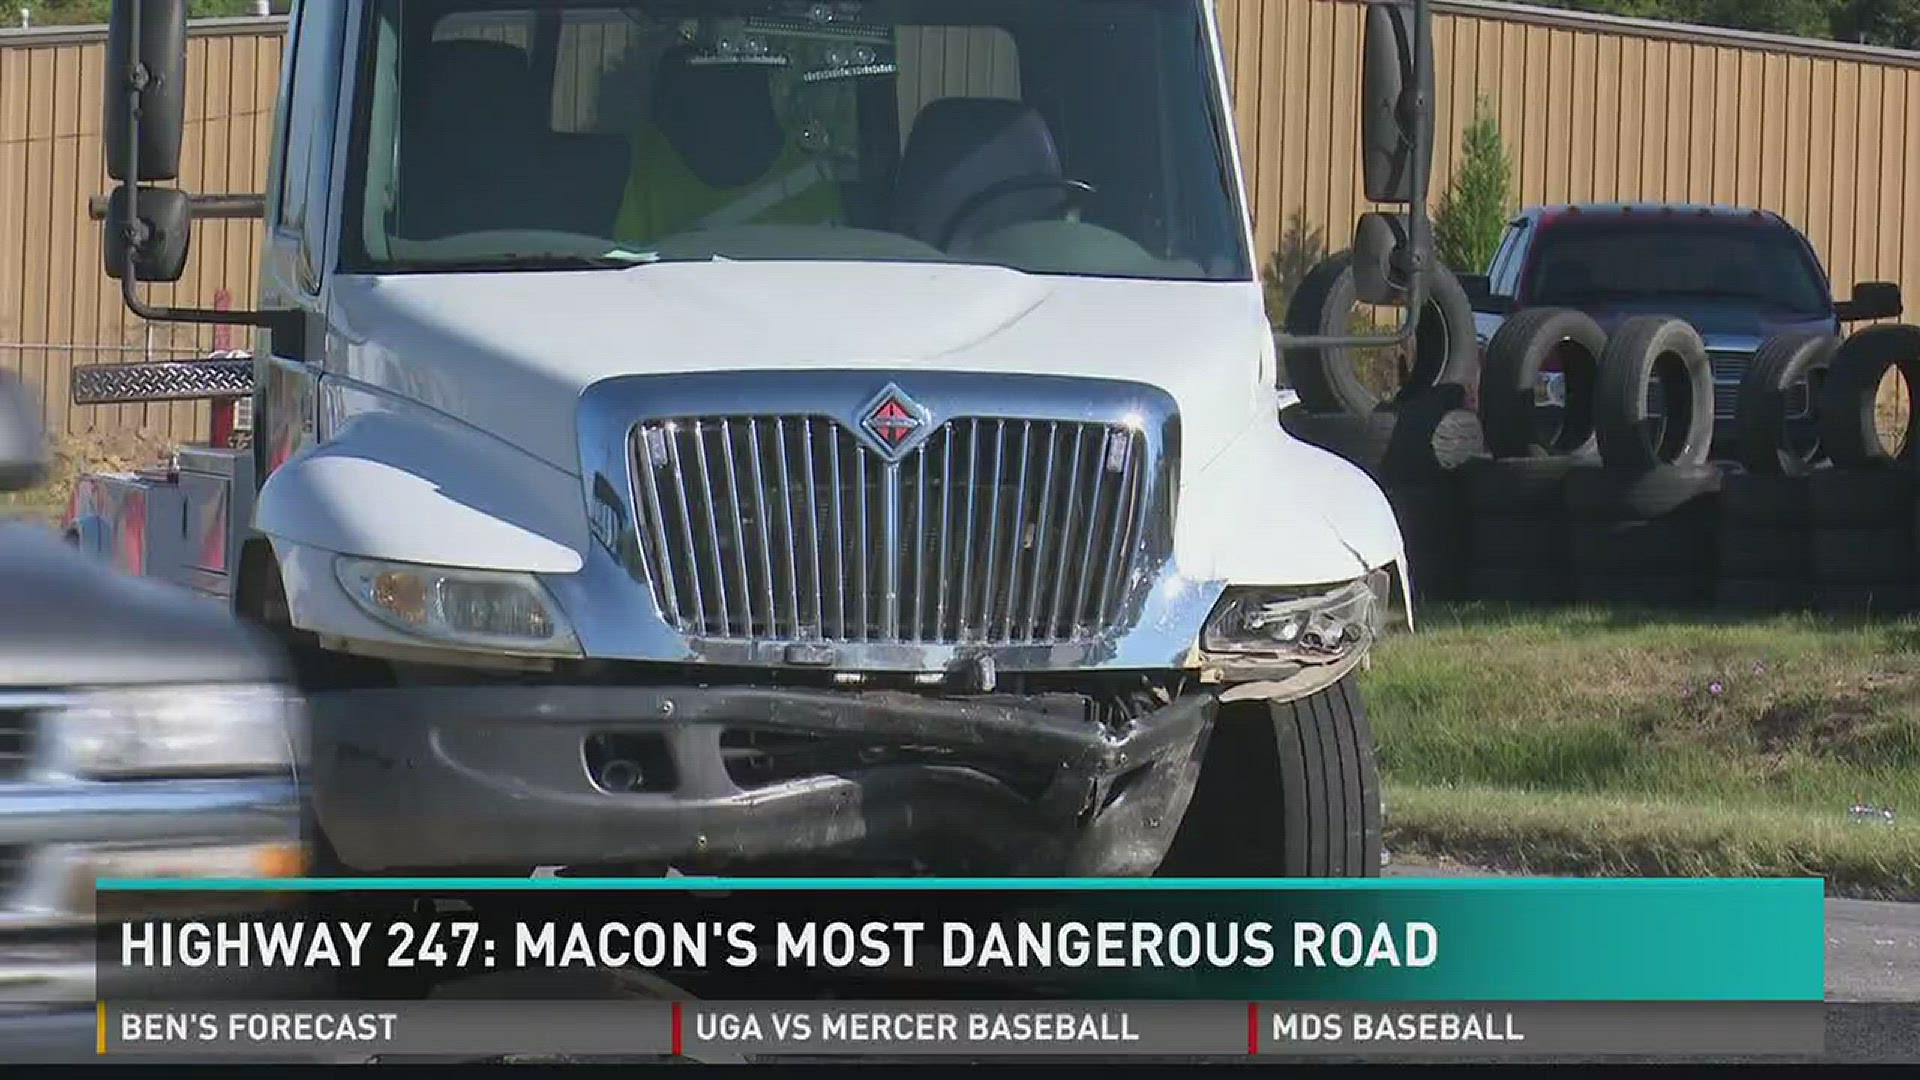 Highway 247: Macon's most dangerous road